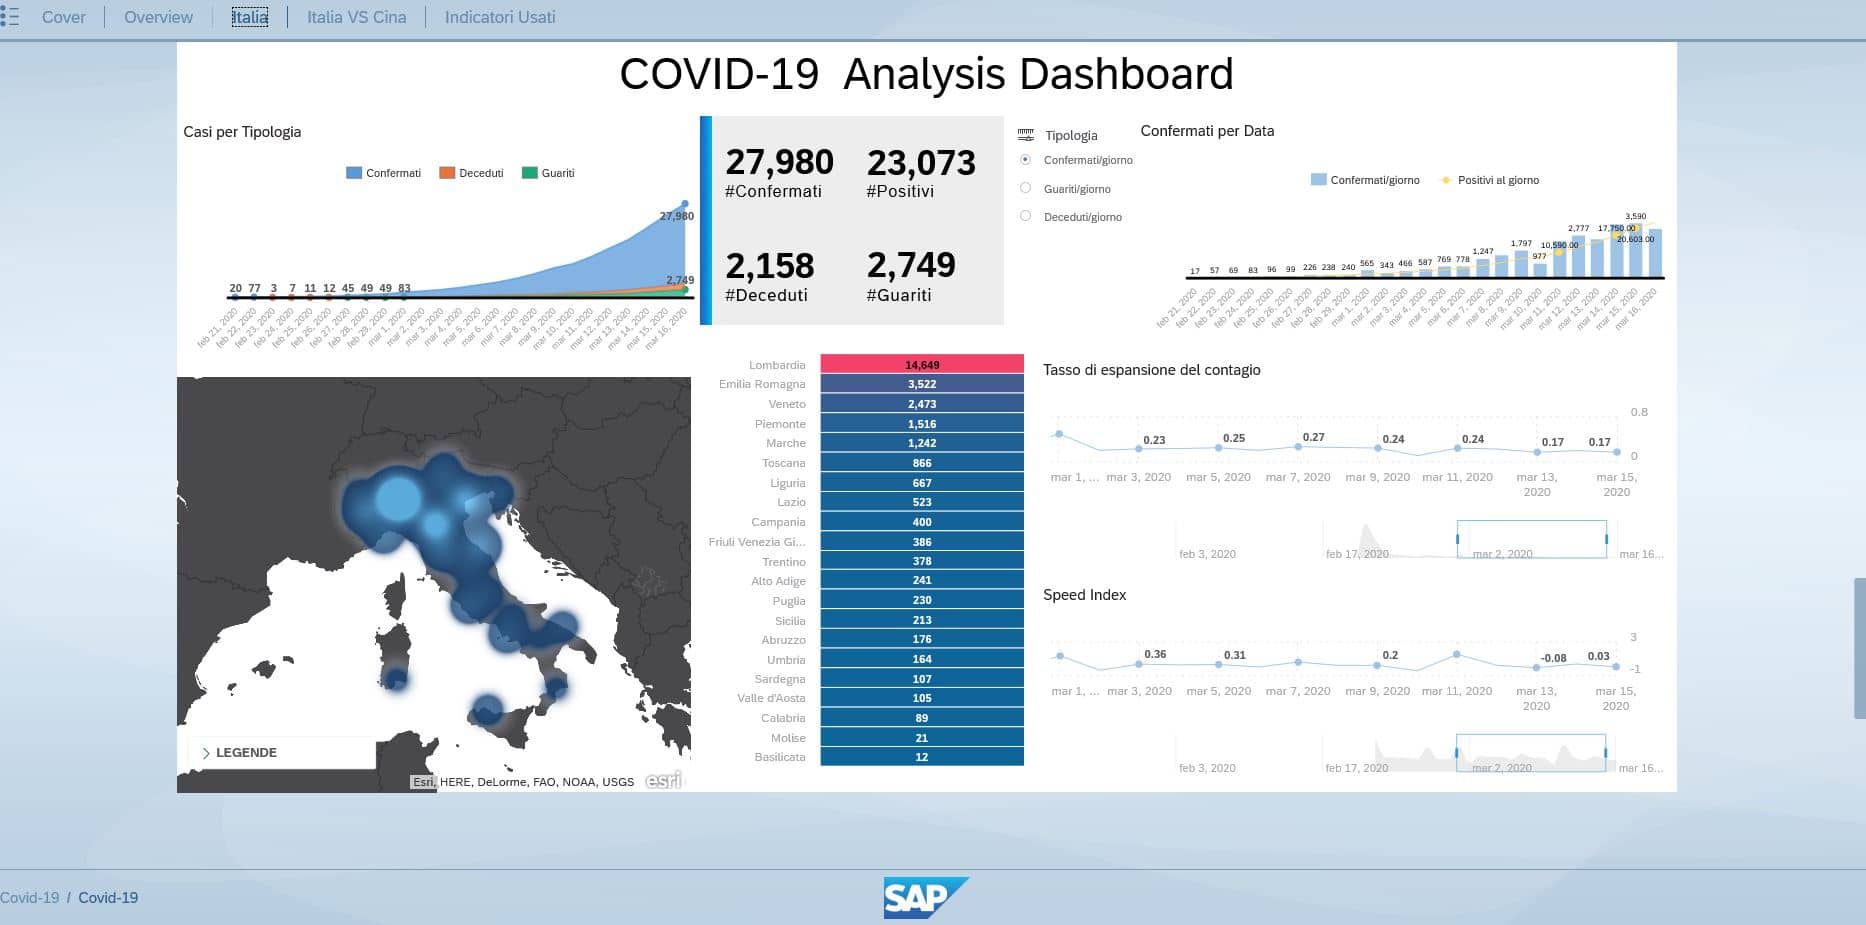 SAP Italia ha sviluppato una dashboard per analizzare la diffusione del contagio da Coronavirus, capirne l’estensione e la velocità della sua trasmissione in Italia e nel mondo